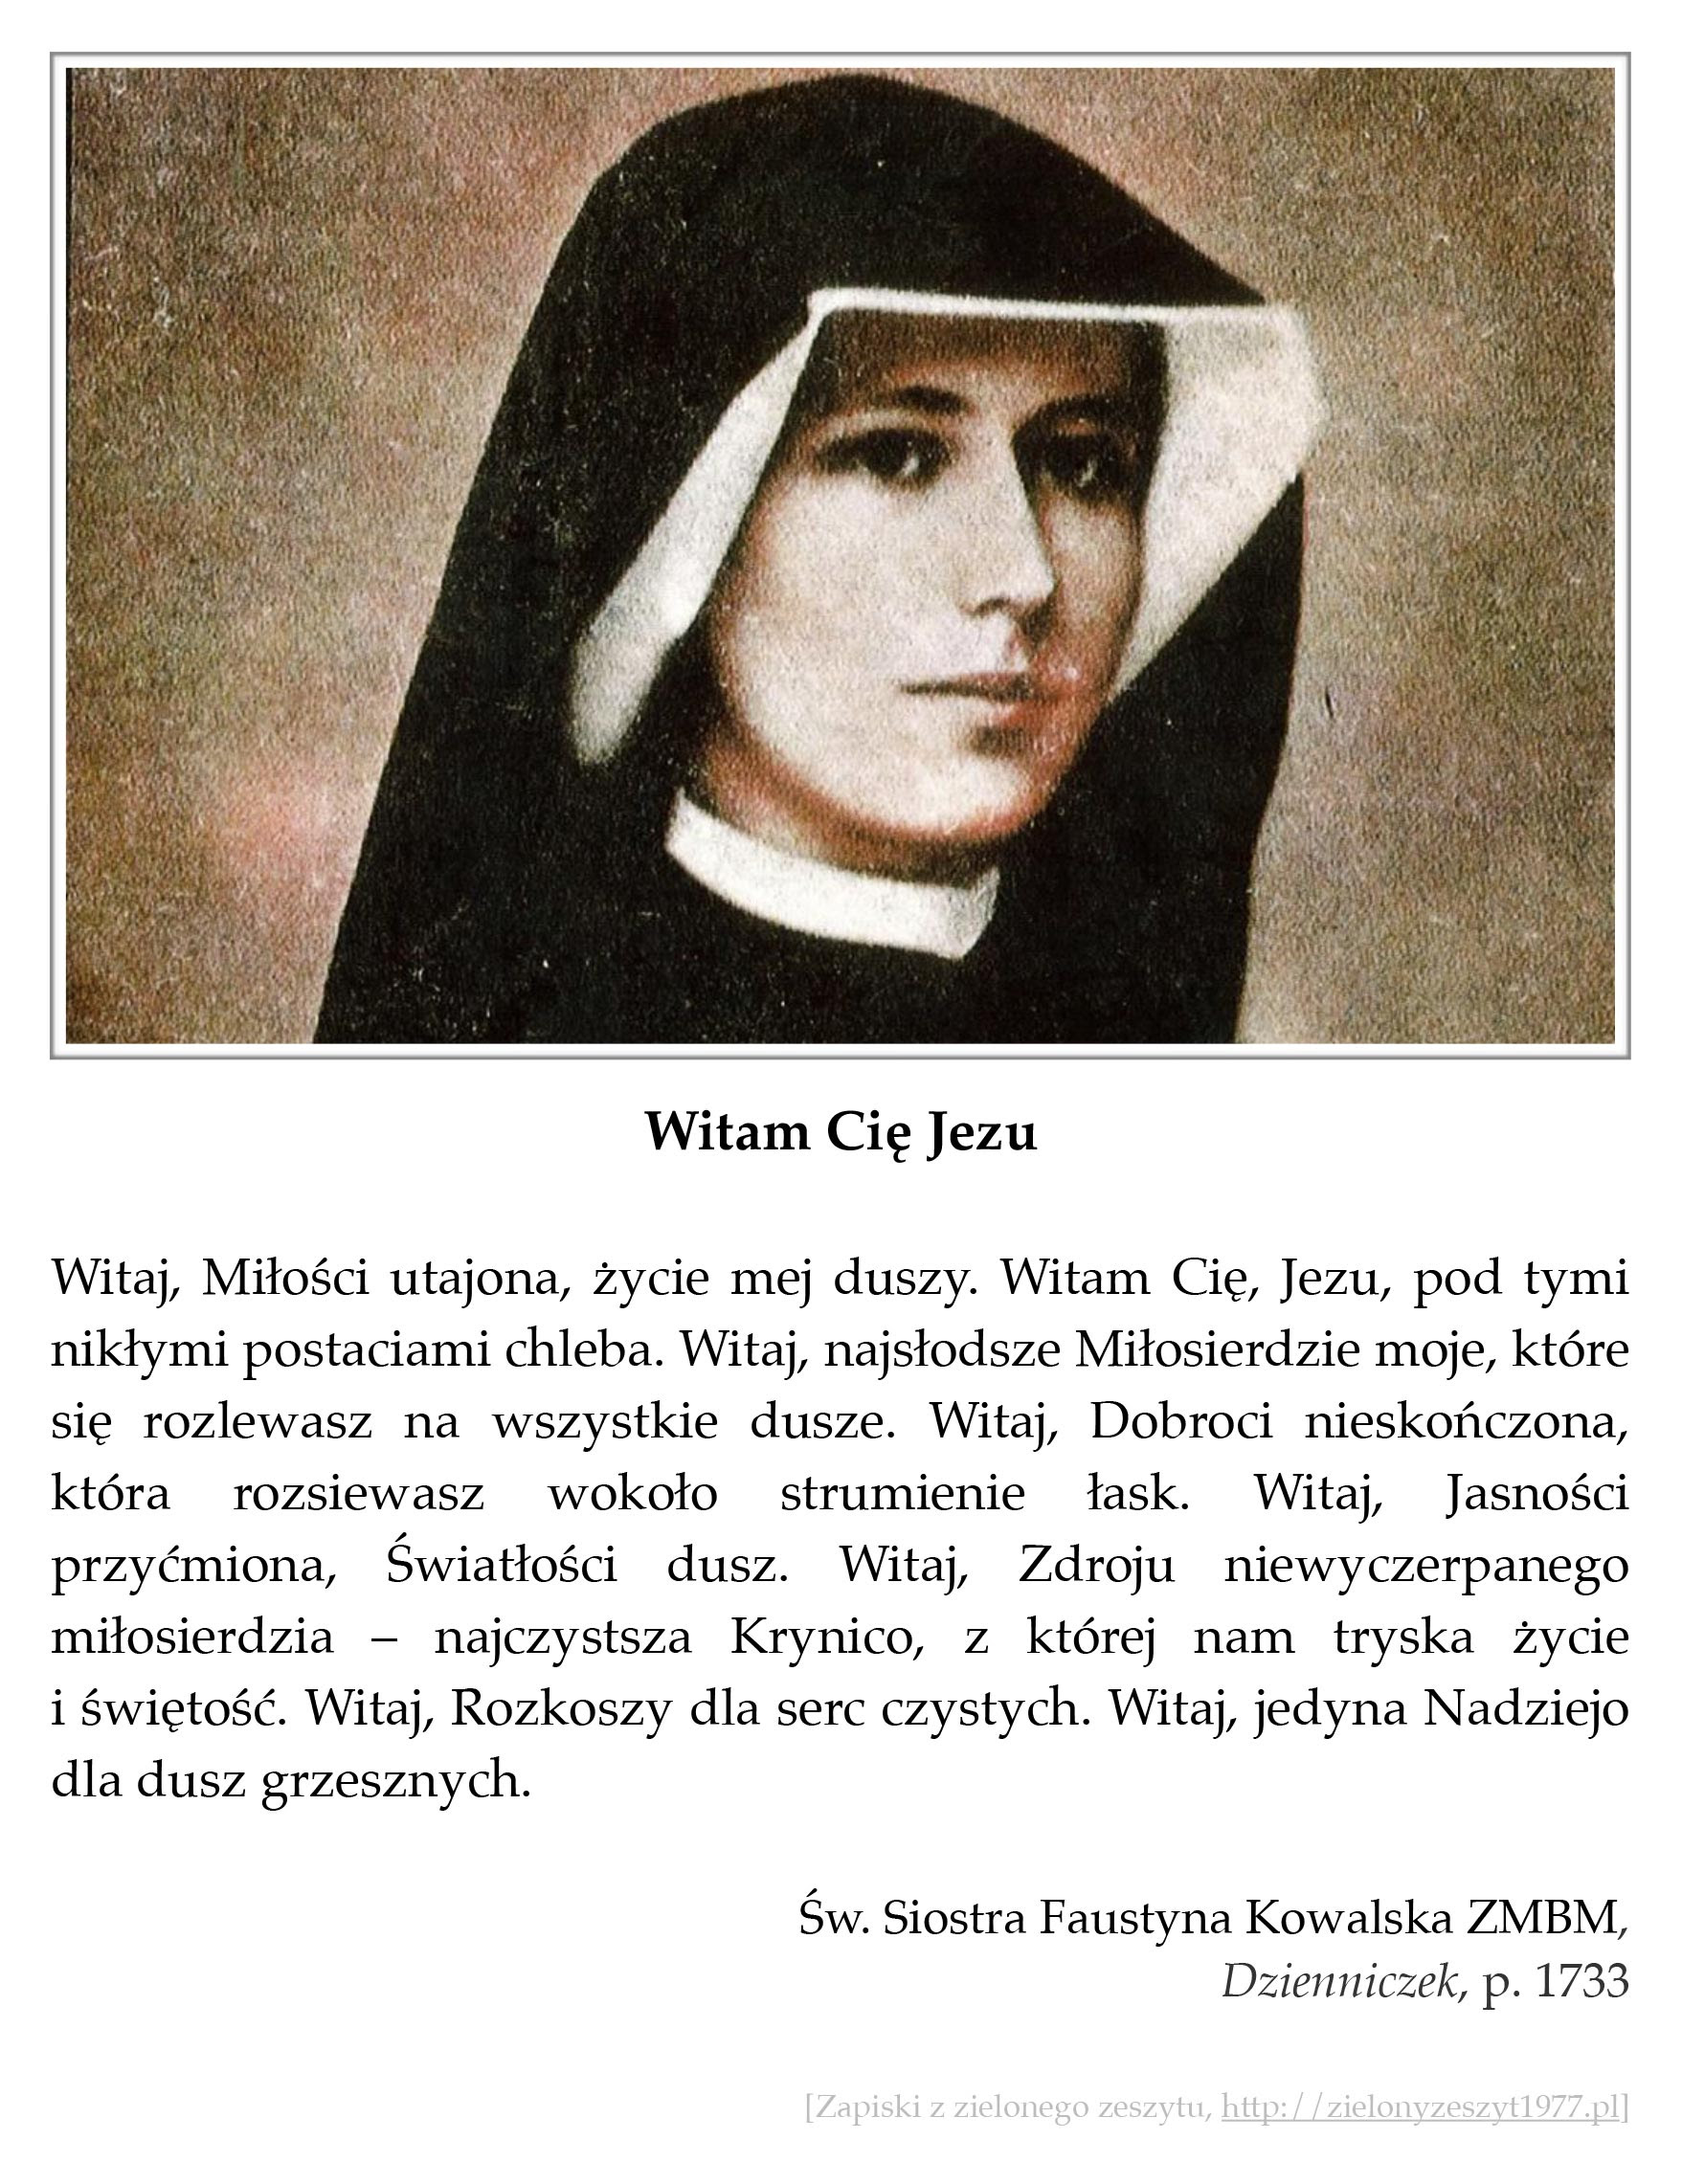 Witam Cię Jezu; św. Faustyna Kowalska · Zapiski z zielonego zeszytu